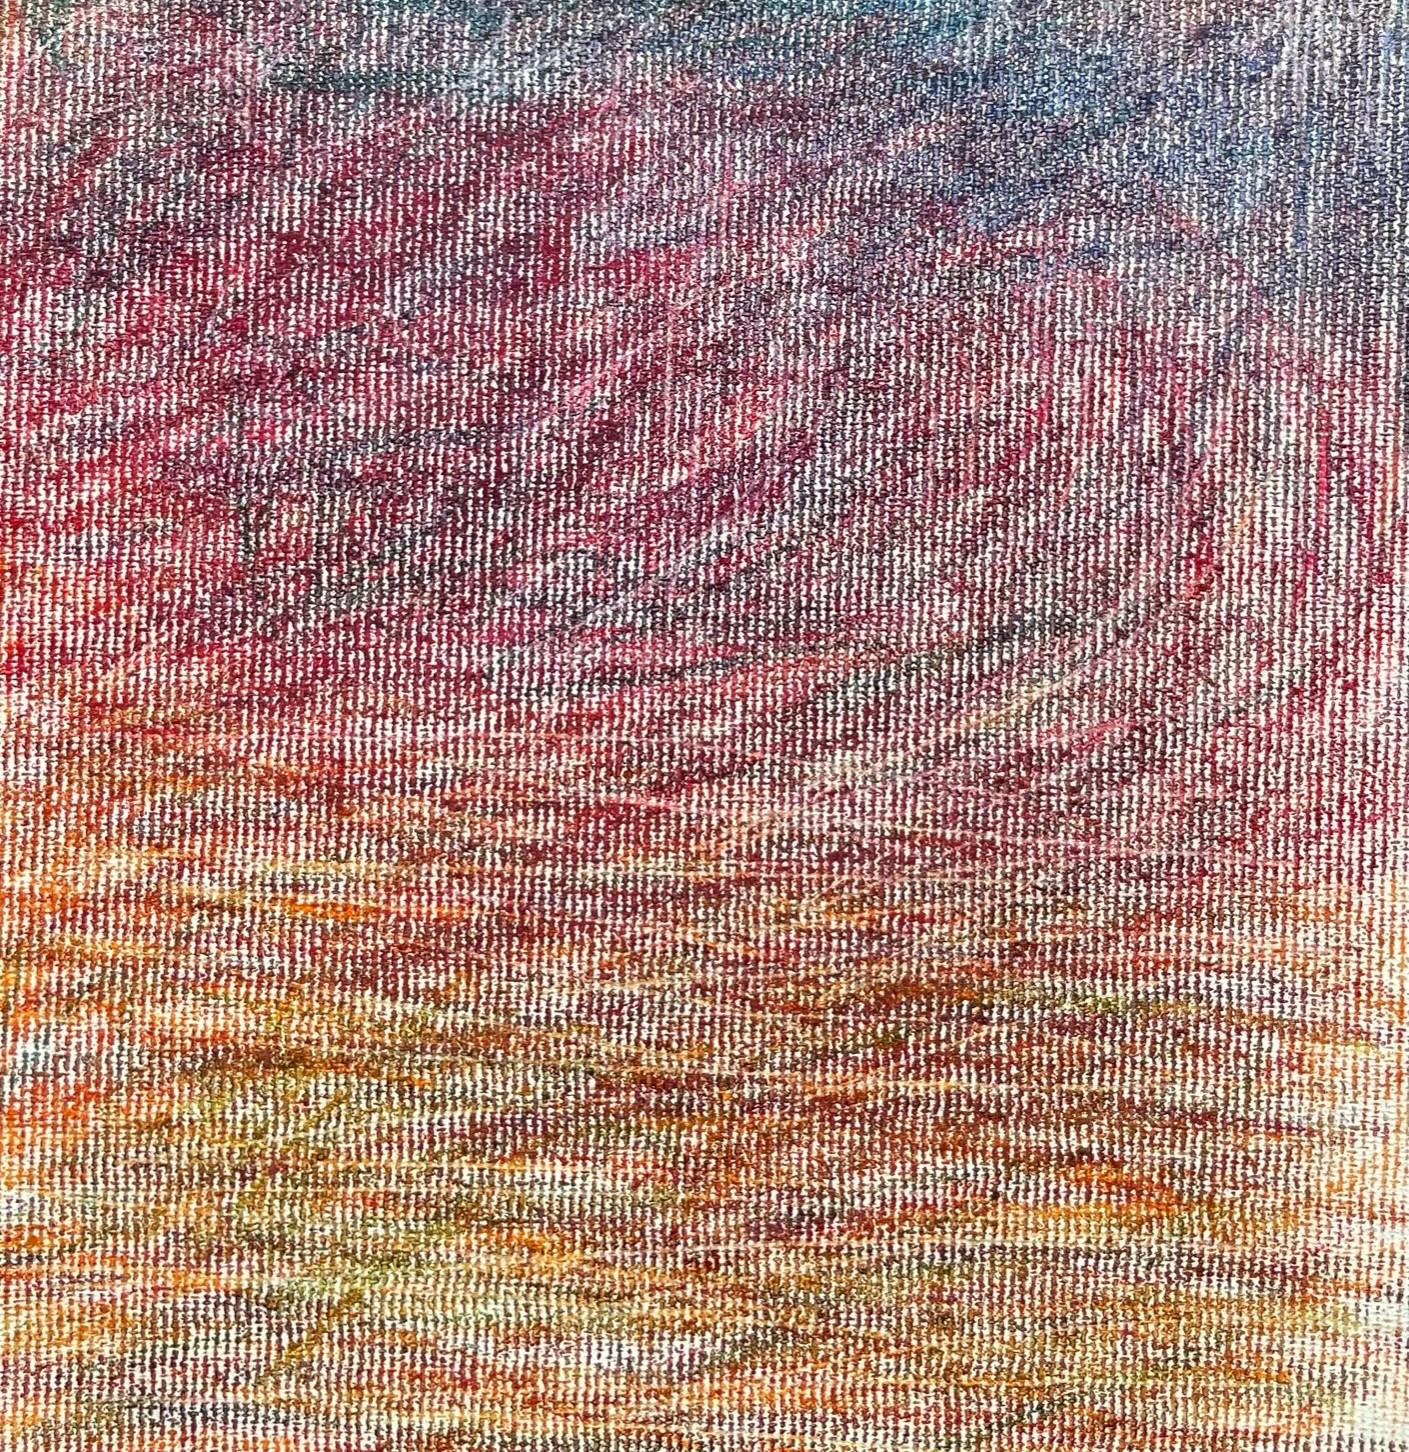 Body in the Field #9 – Landschaft, Orange, Rot, Buntstift  (Expressionismus), Art, von Zsolt Berszán